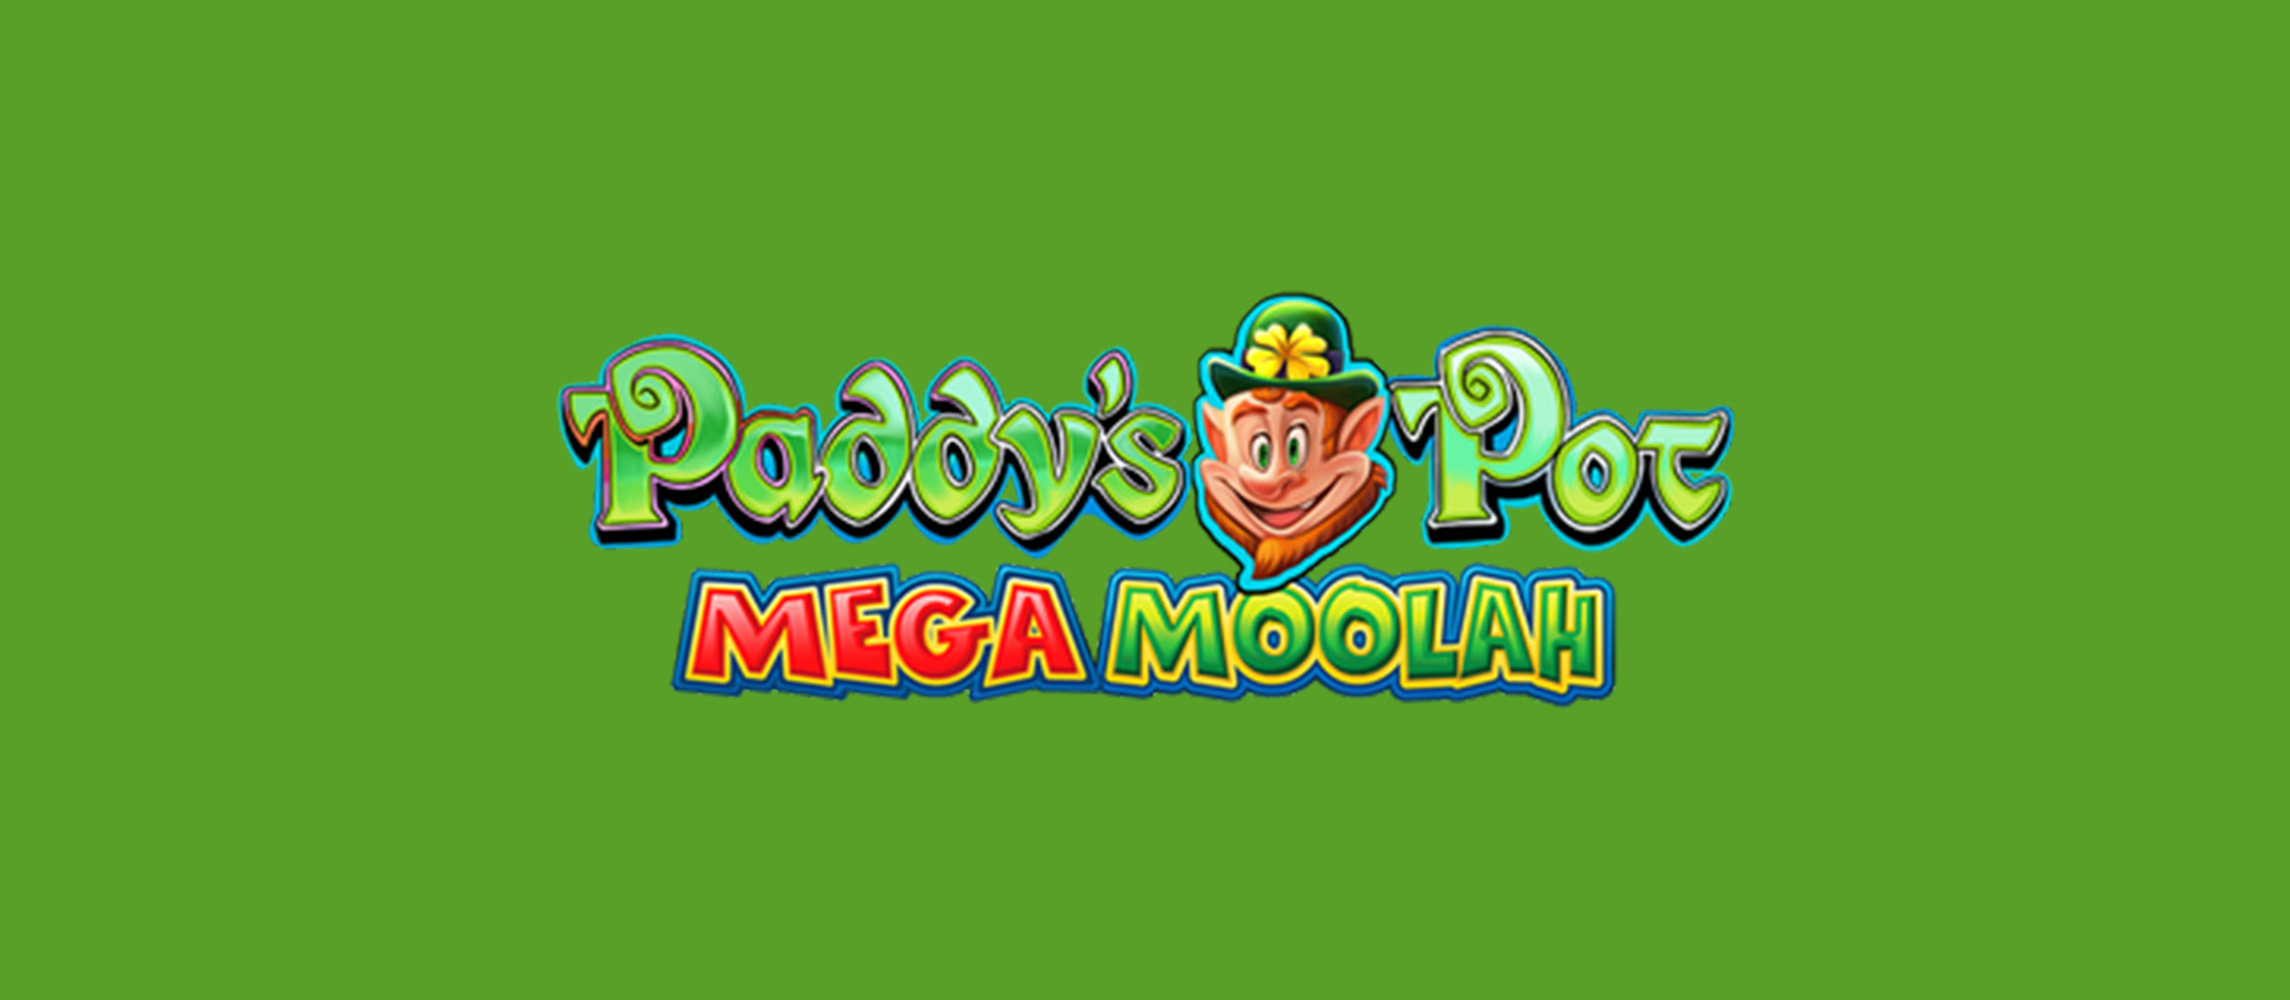 Paddy's Pot Mega Moolah by Microgaming